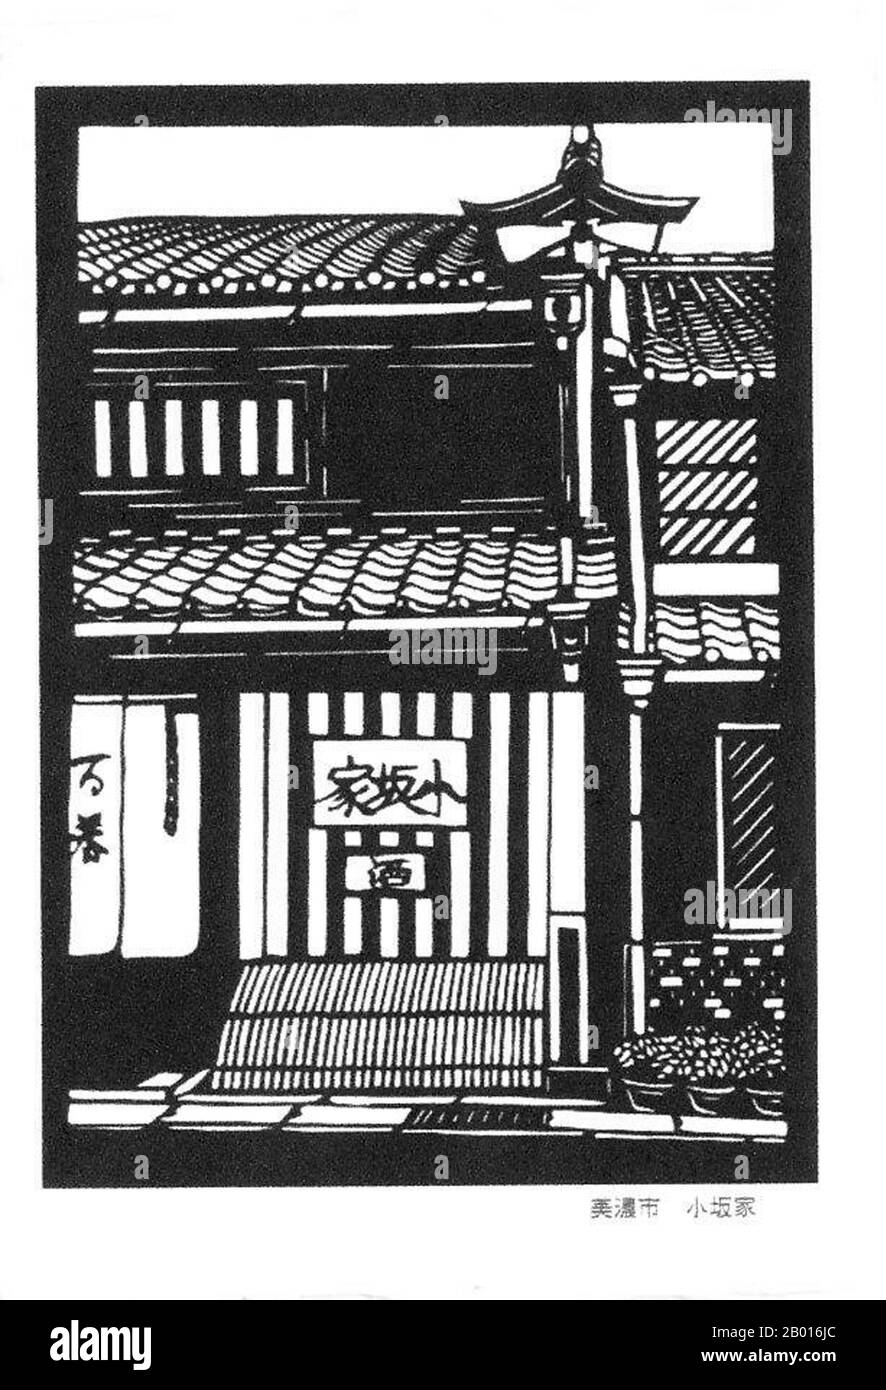 Giappone: "Vecchi edifici del periodo Edo a Mino City, Prefettura di Gifu". Ukiyo-e stampa di blocchi di legno, inizio 20 ° secolo. Mino è una città situata nella Prefettura di Gifu del Giappone centrale. La città è rinomata per la tradizionale carta Mino washi giapponese e le sue strade, che sono nello stile del primo periodo Edo (1603-1868). Foto Stock